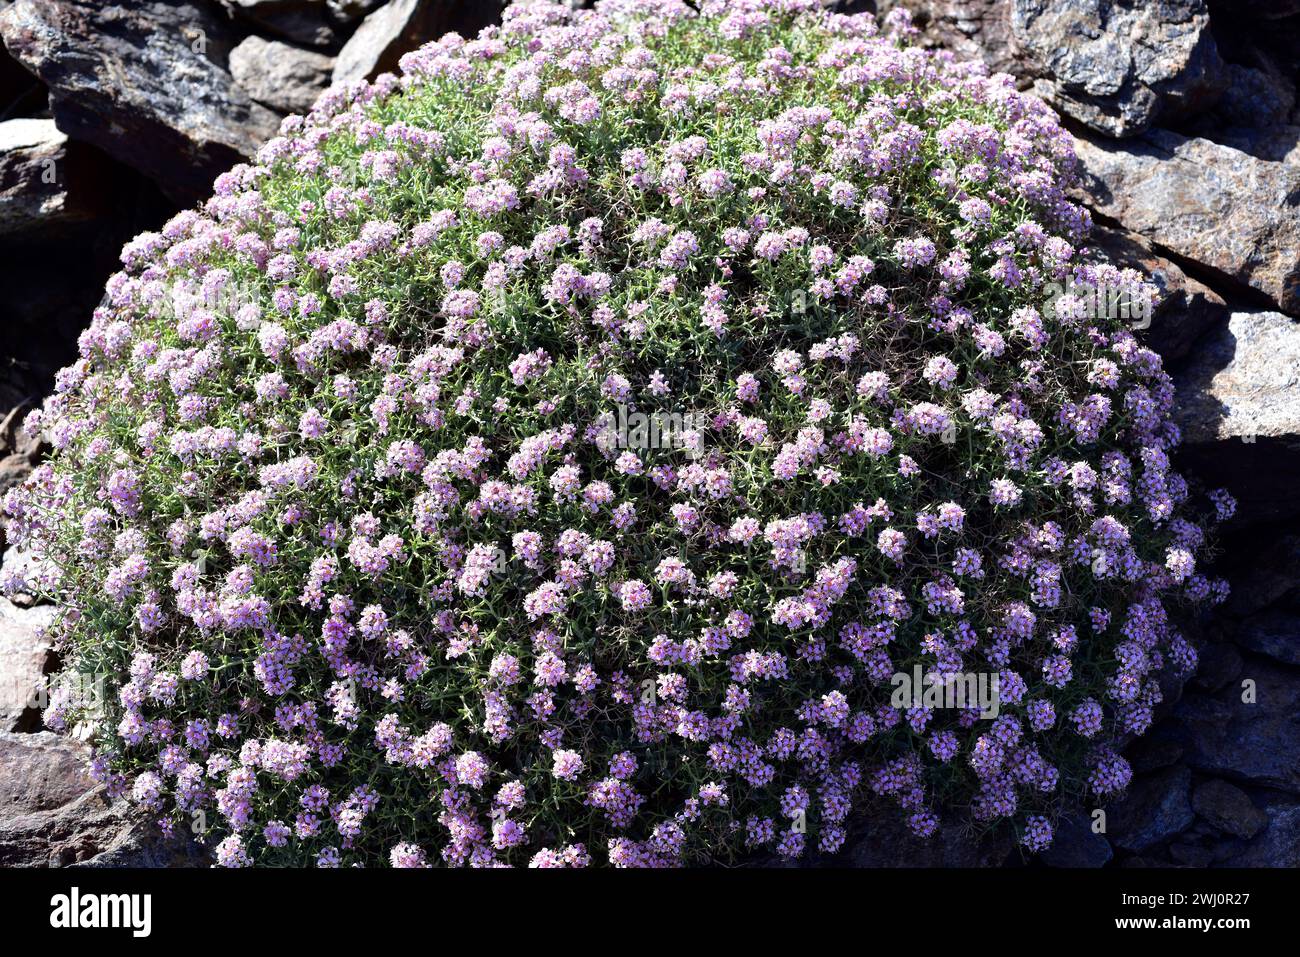 Le Rasaculos (Hormathophylla spinosa, Alyssum spinosum ou Ptilotrichum spinosum) est une plante en forme de coussin épineux originaire de l'ouest du bassin méditerranéen. Banque D'Images